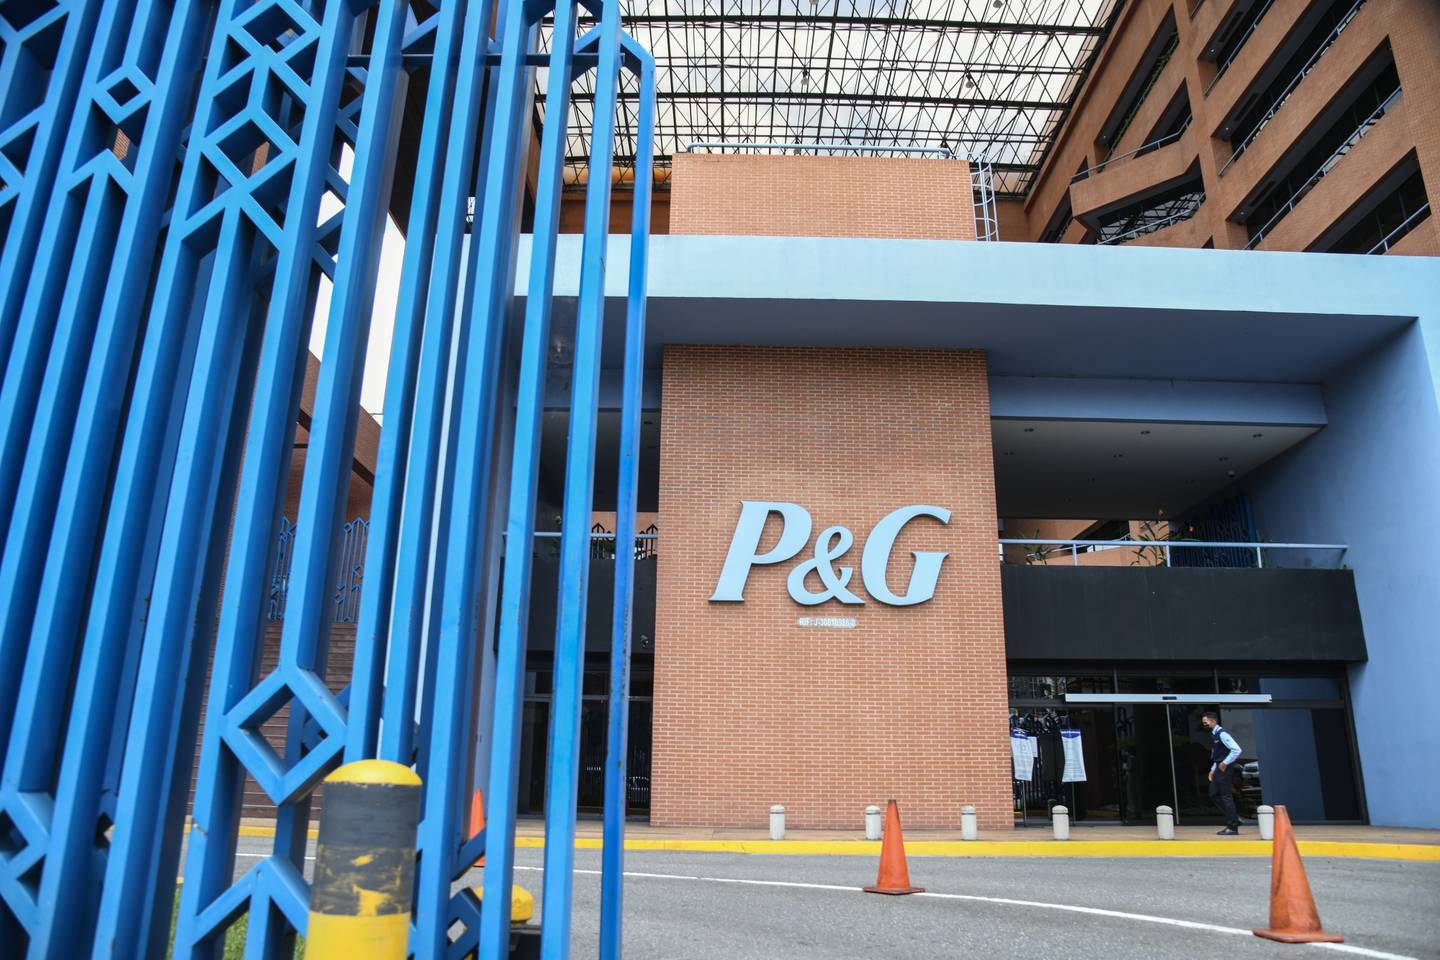 La entrada de la Torre P&G donde se instaló el nuevo Wave Tech Hub en Caracas.Fotógrafo: Carolina Cabral/Bloombergdfd